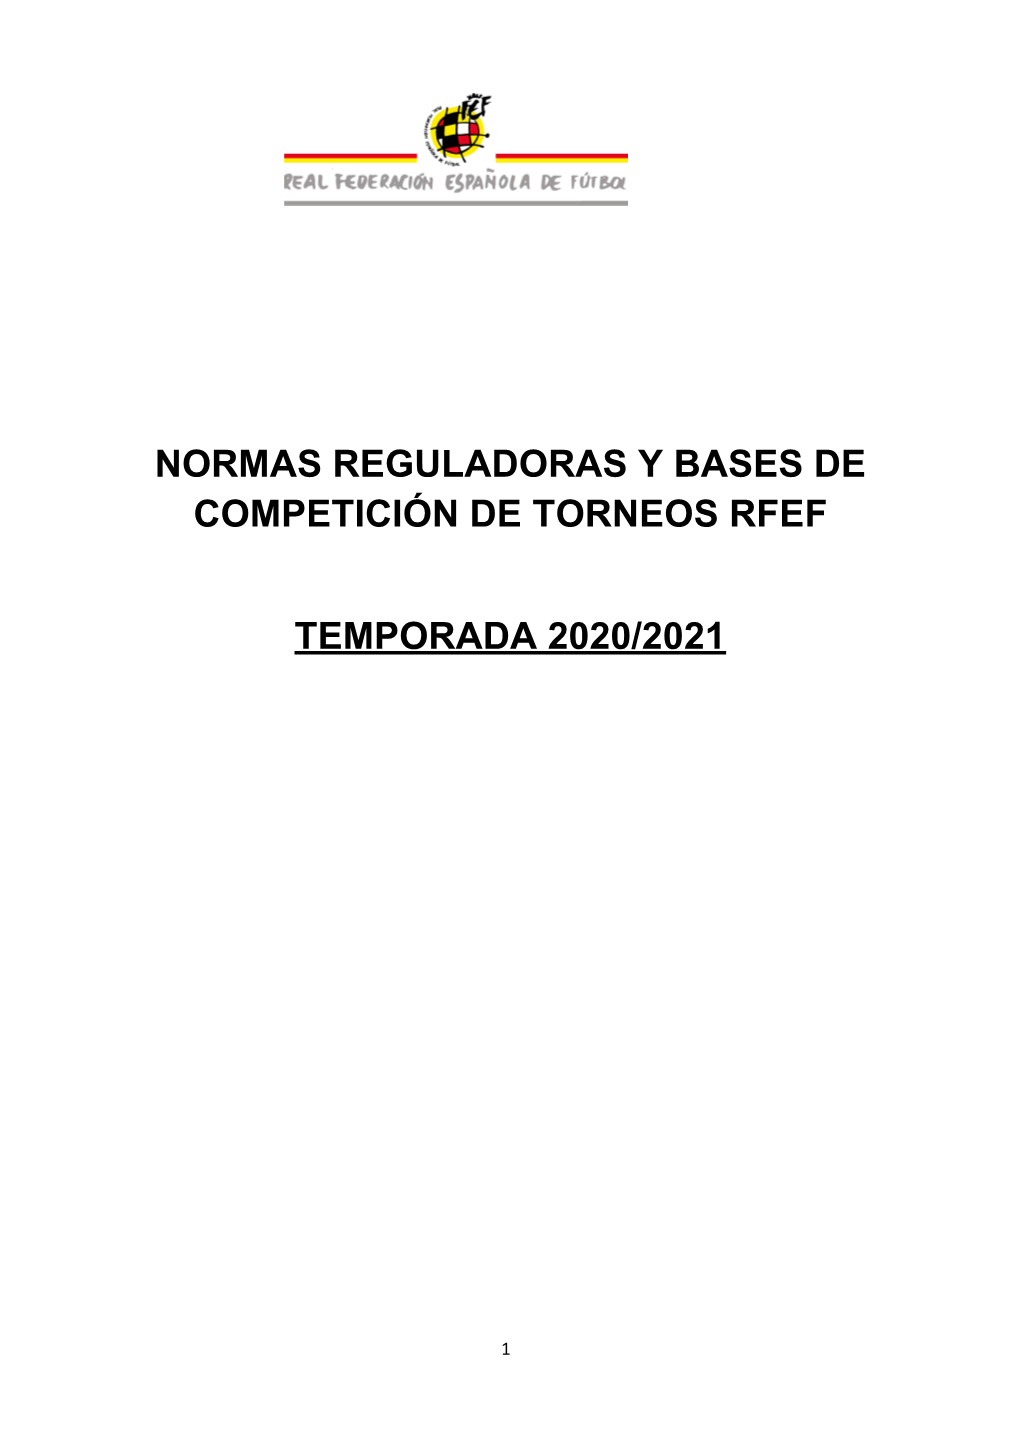 Normas Reguladoras Y Bases De Competición De Torneos Rfef Temporada 2020/2021